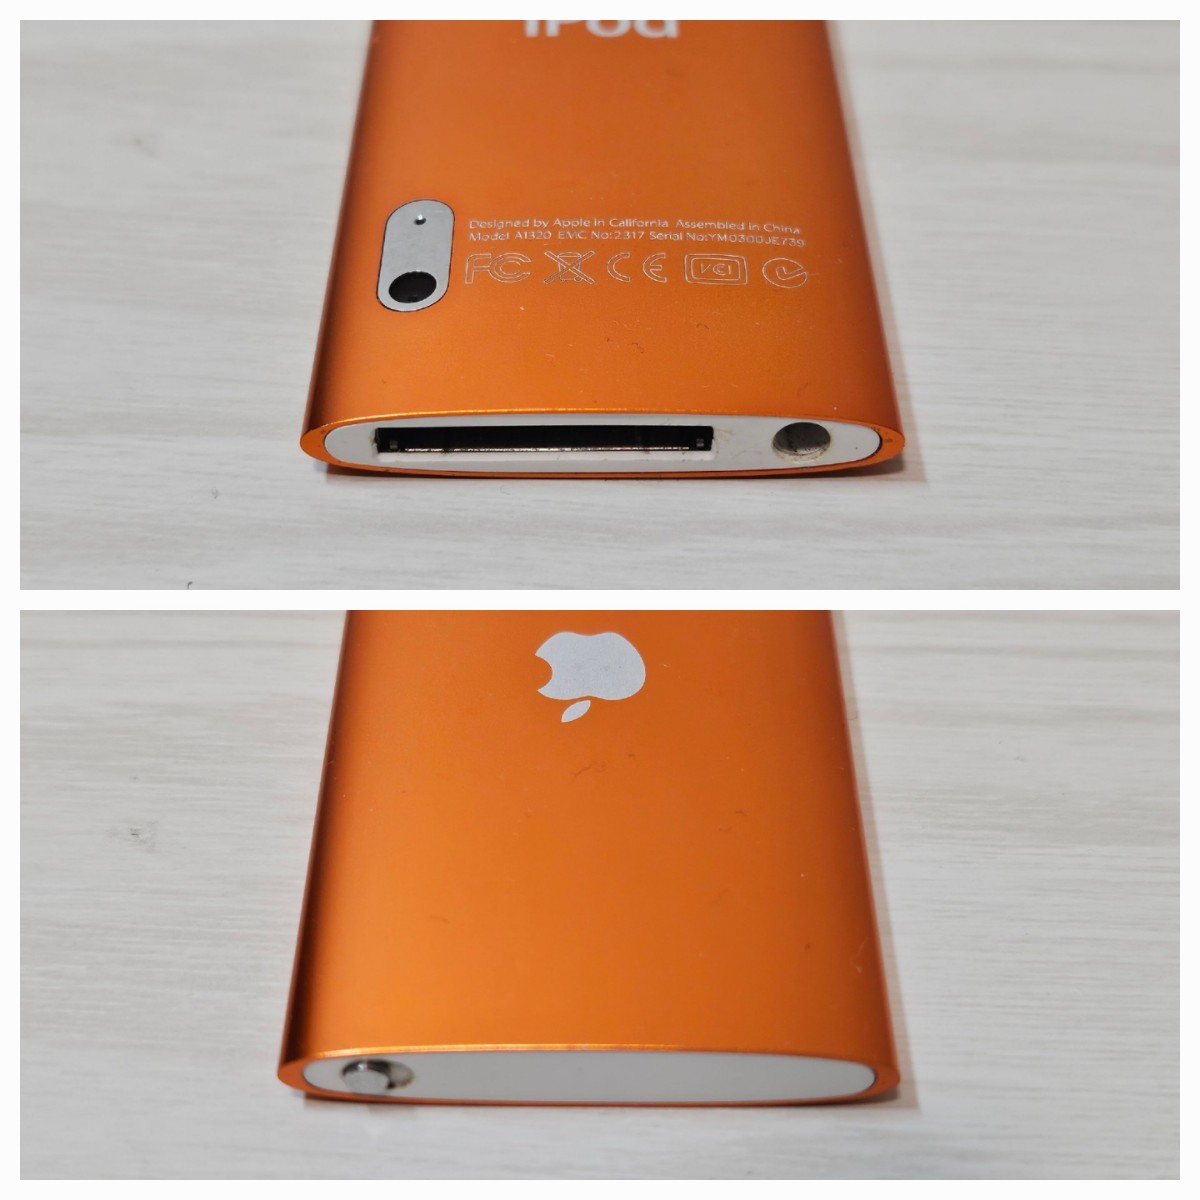 ☆動作確認済み☆iPod nano 第5世代 A1320 オレンジアップル Apple 16GB 本体のみ_画像7